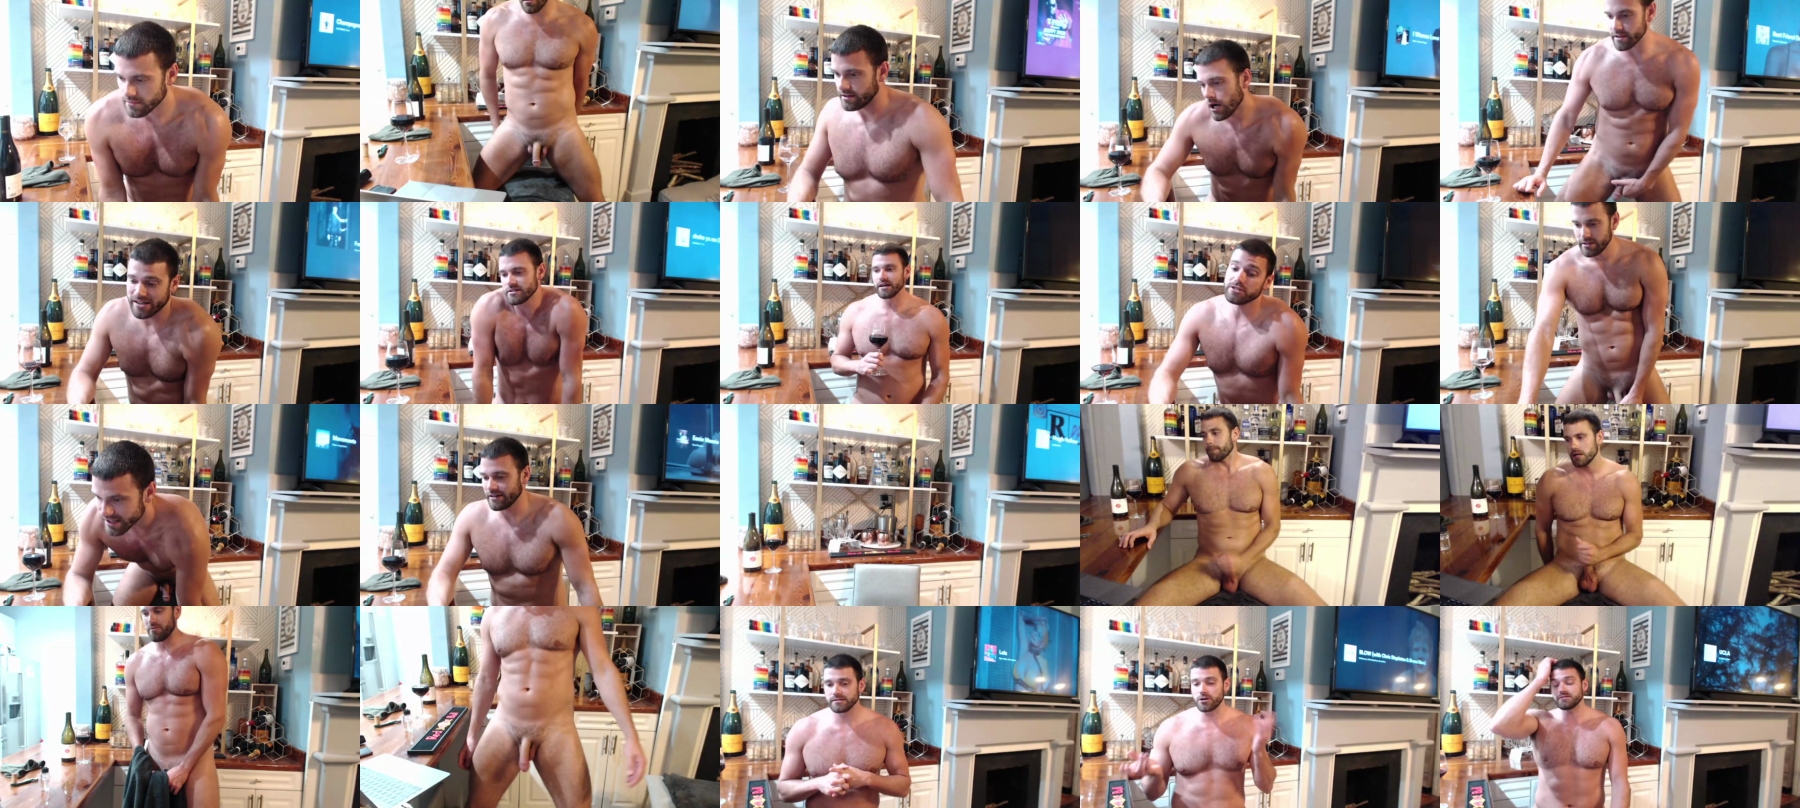 Chasemason20  21-07-2021 Male Topless